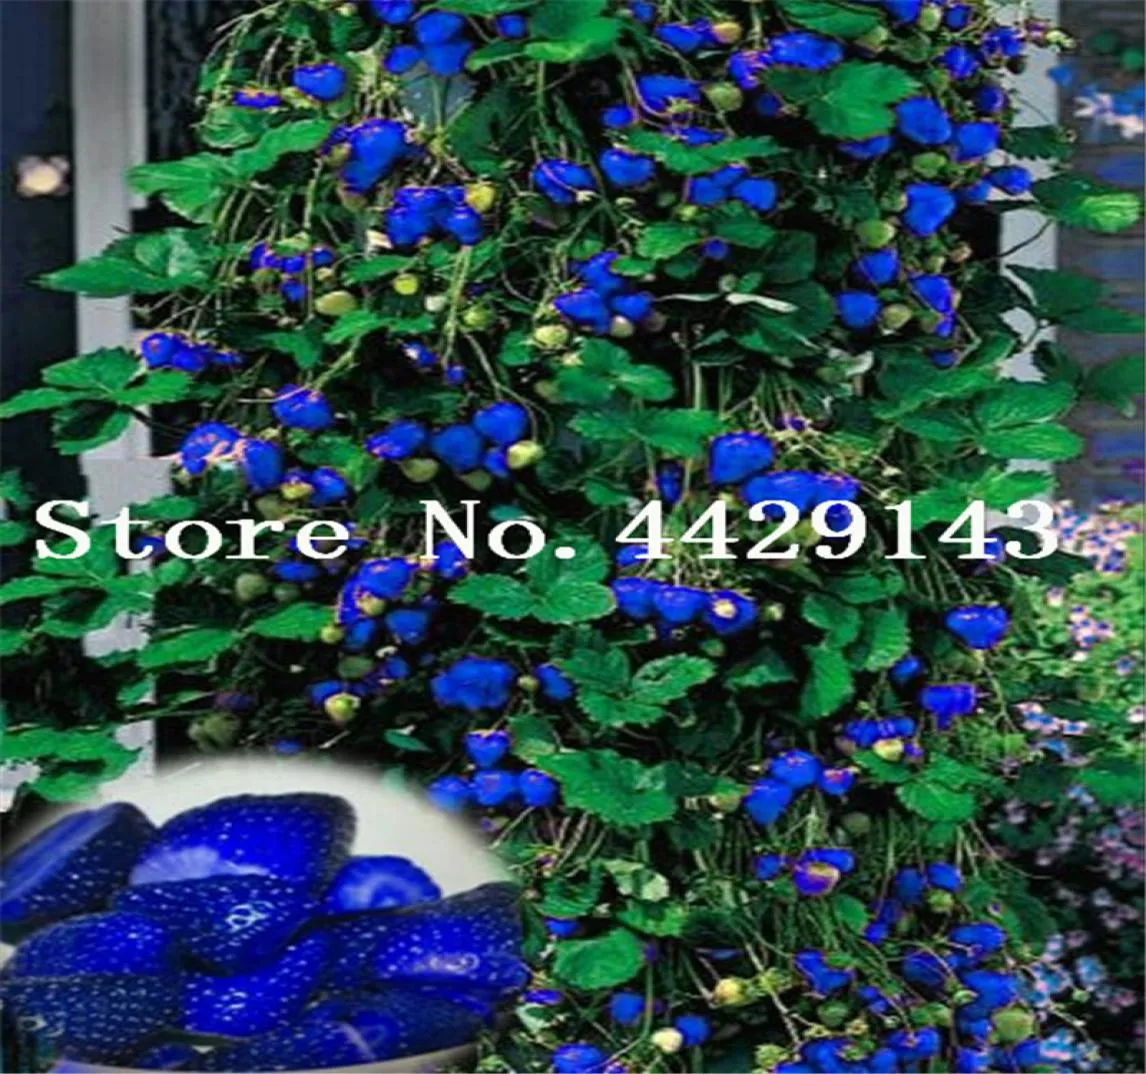 500 Stcs Blue Climbing Strawberry Plant Tree Plantvery köstliche Obstpflanze für Hausgarten Bonsai Pflanze Süß und köstlich5748656